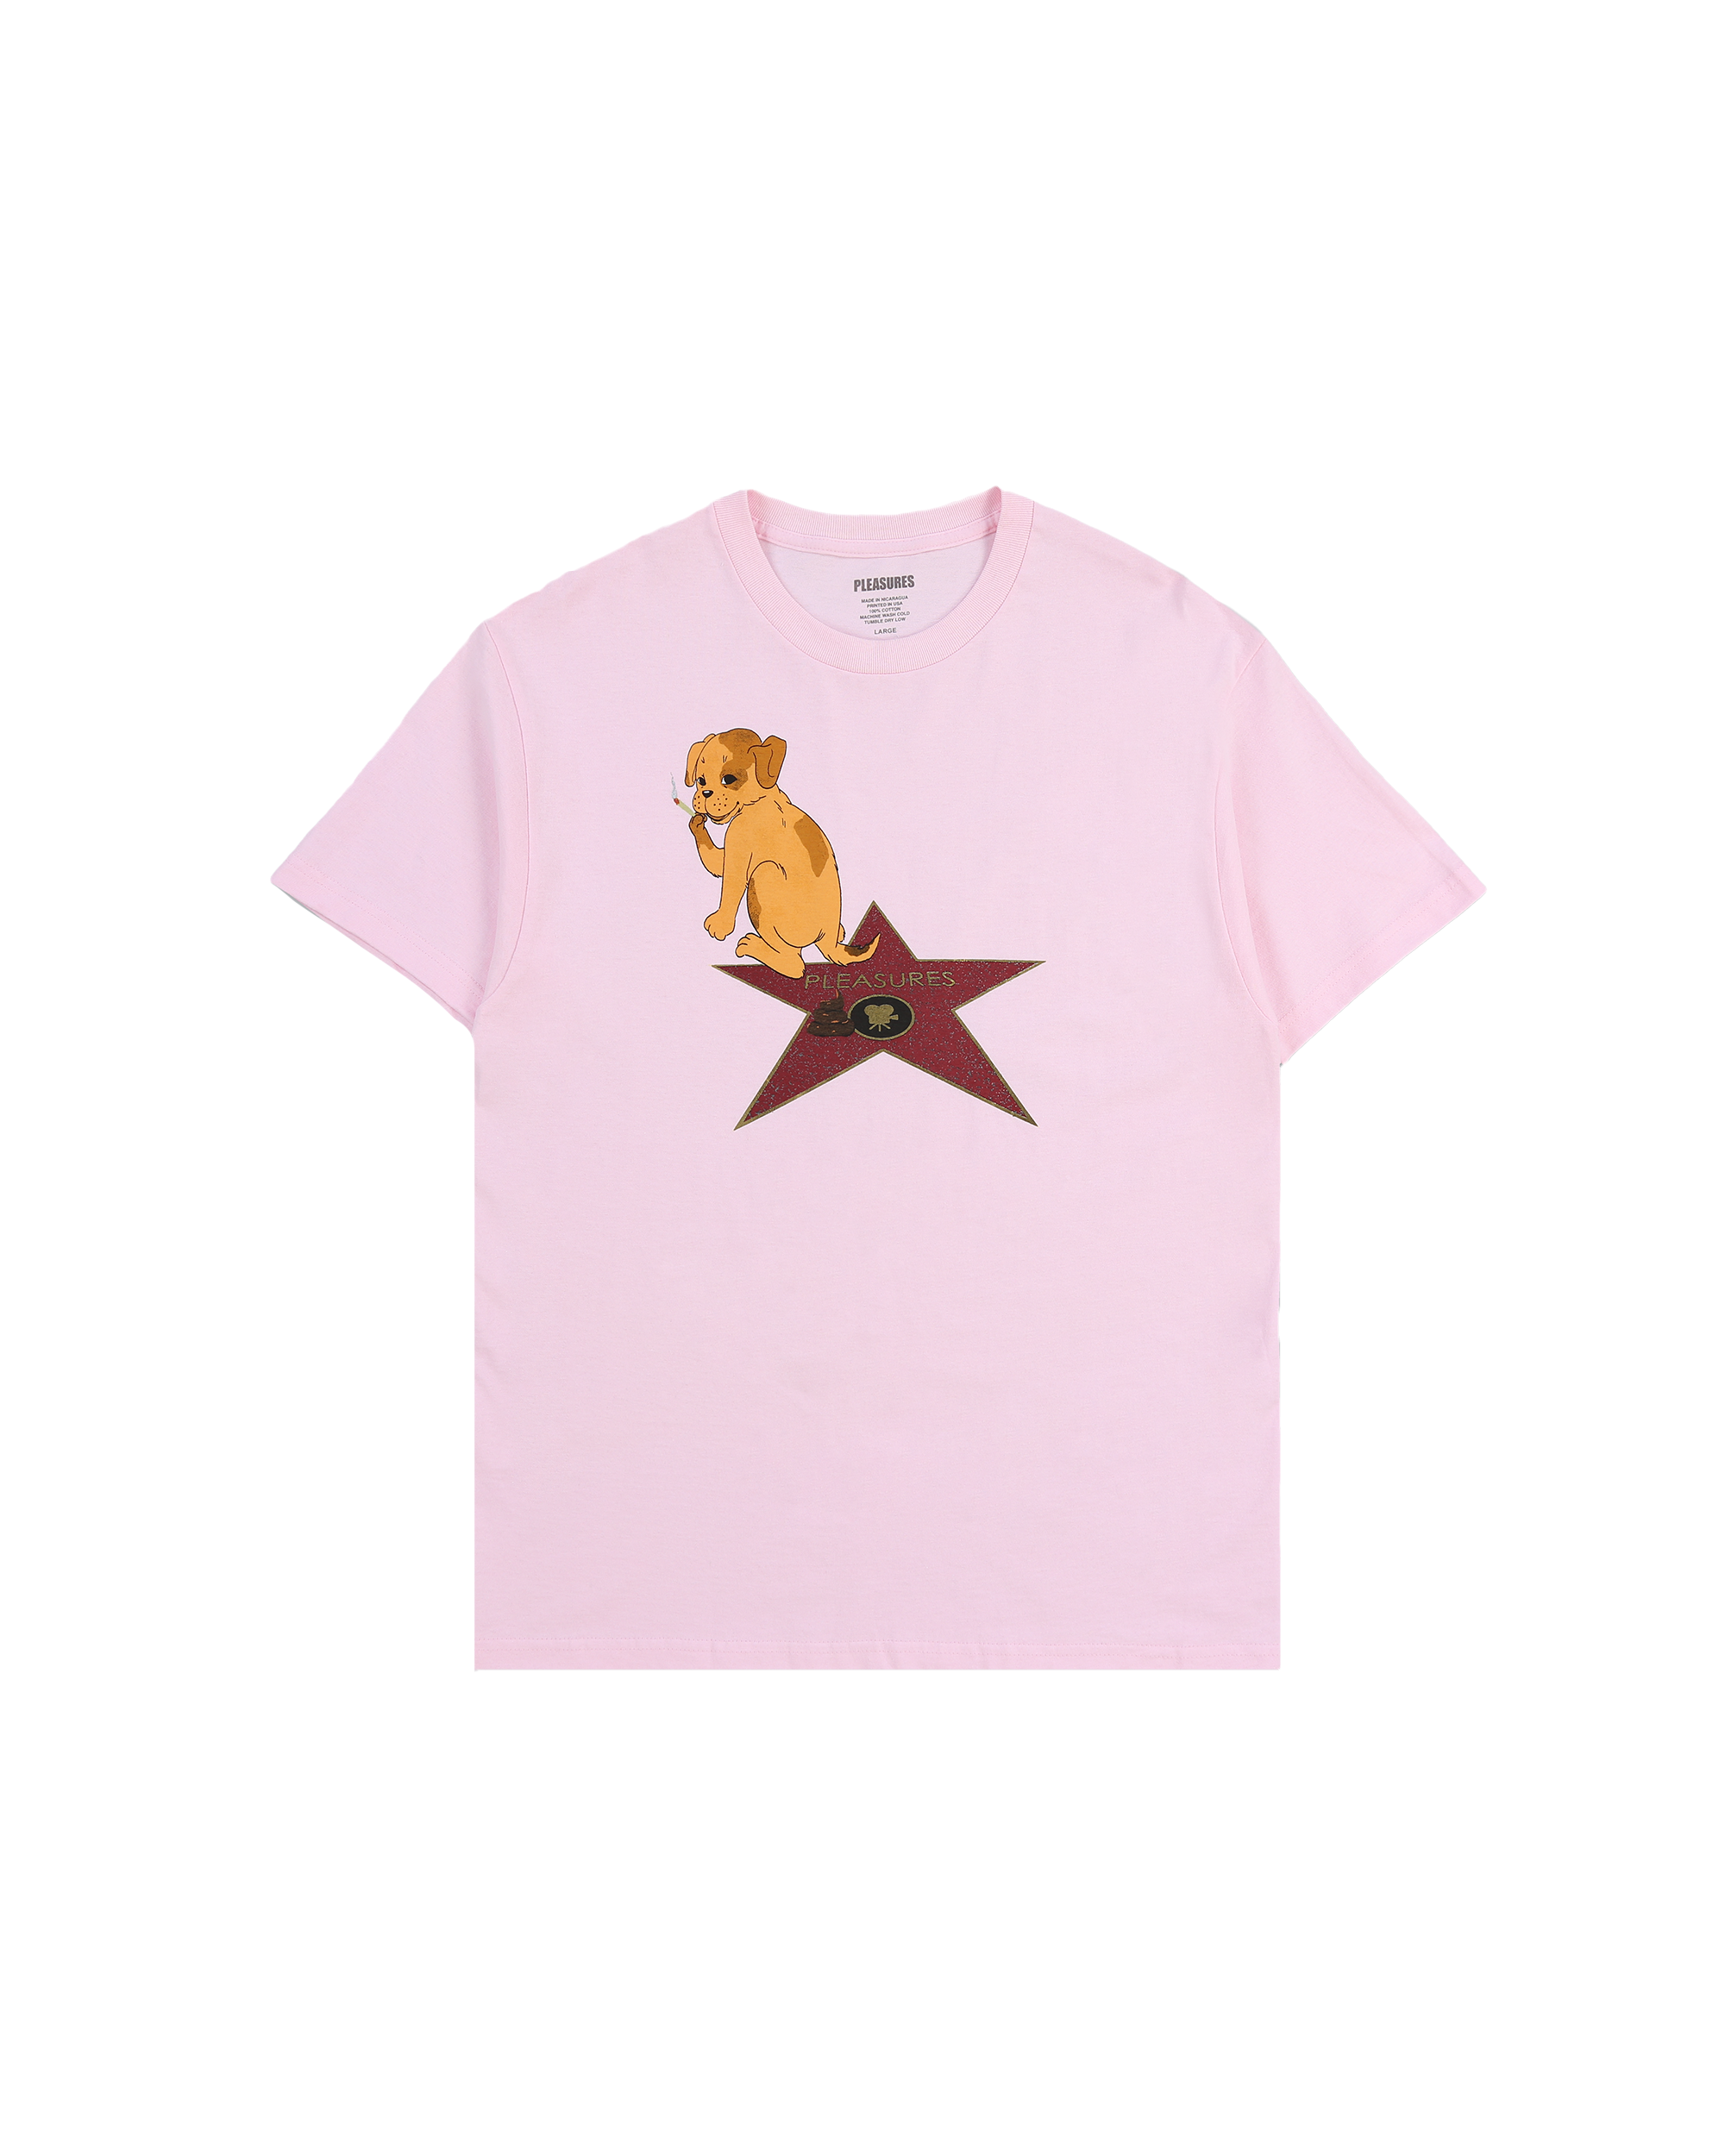 FAME T-Shirt - Pink